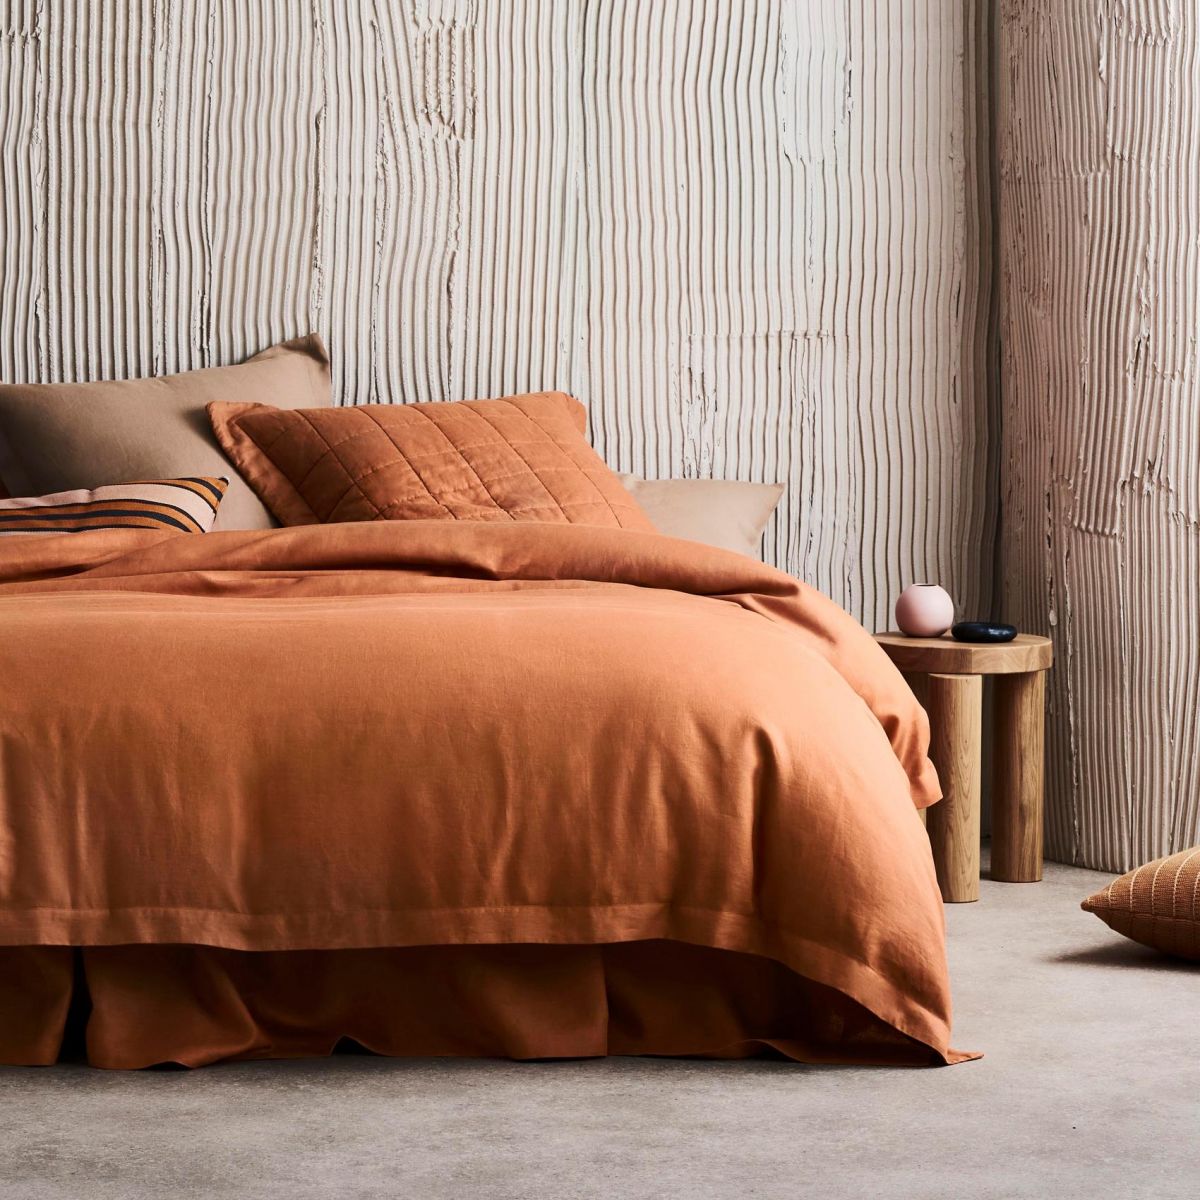 10 Best Bed Linen Brands in Australia